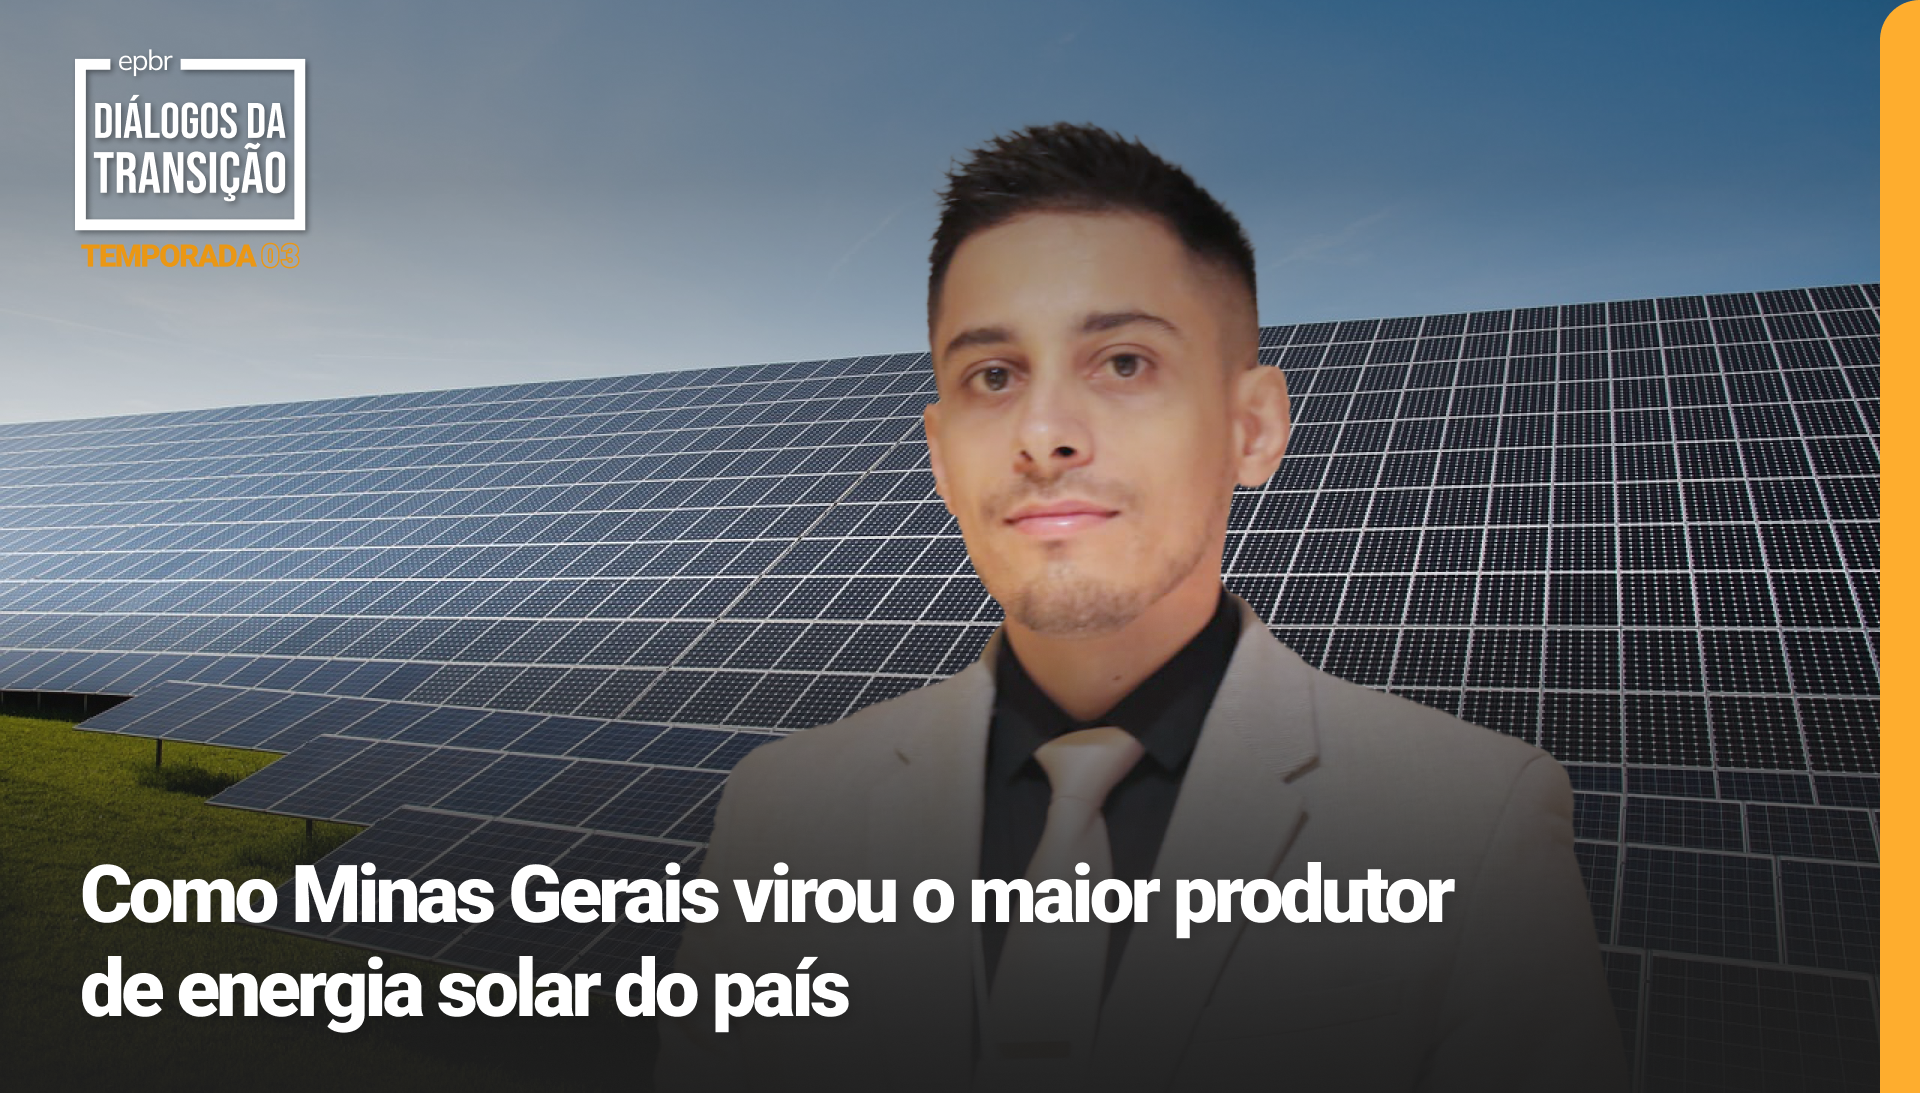 Diálogos da Transição 2023, 3a temporada - Como Minas Gerais virou o maior produtor de energia solar do país, em uma conversa com Pedro Sena, superintendente de política minerária, energética e logística de Minas Gerais [na imagem]